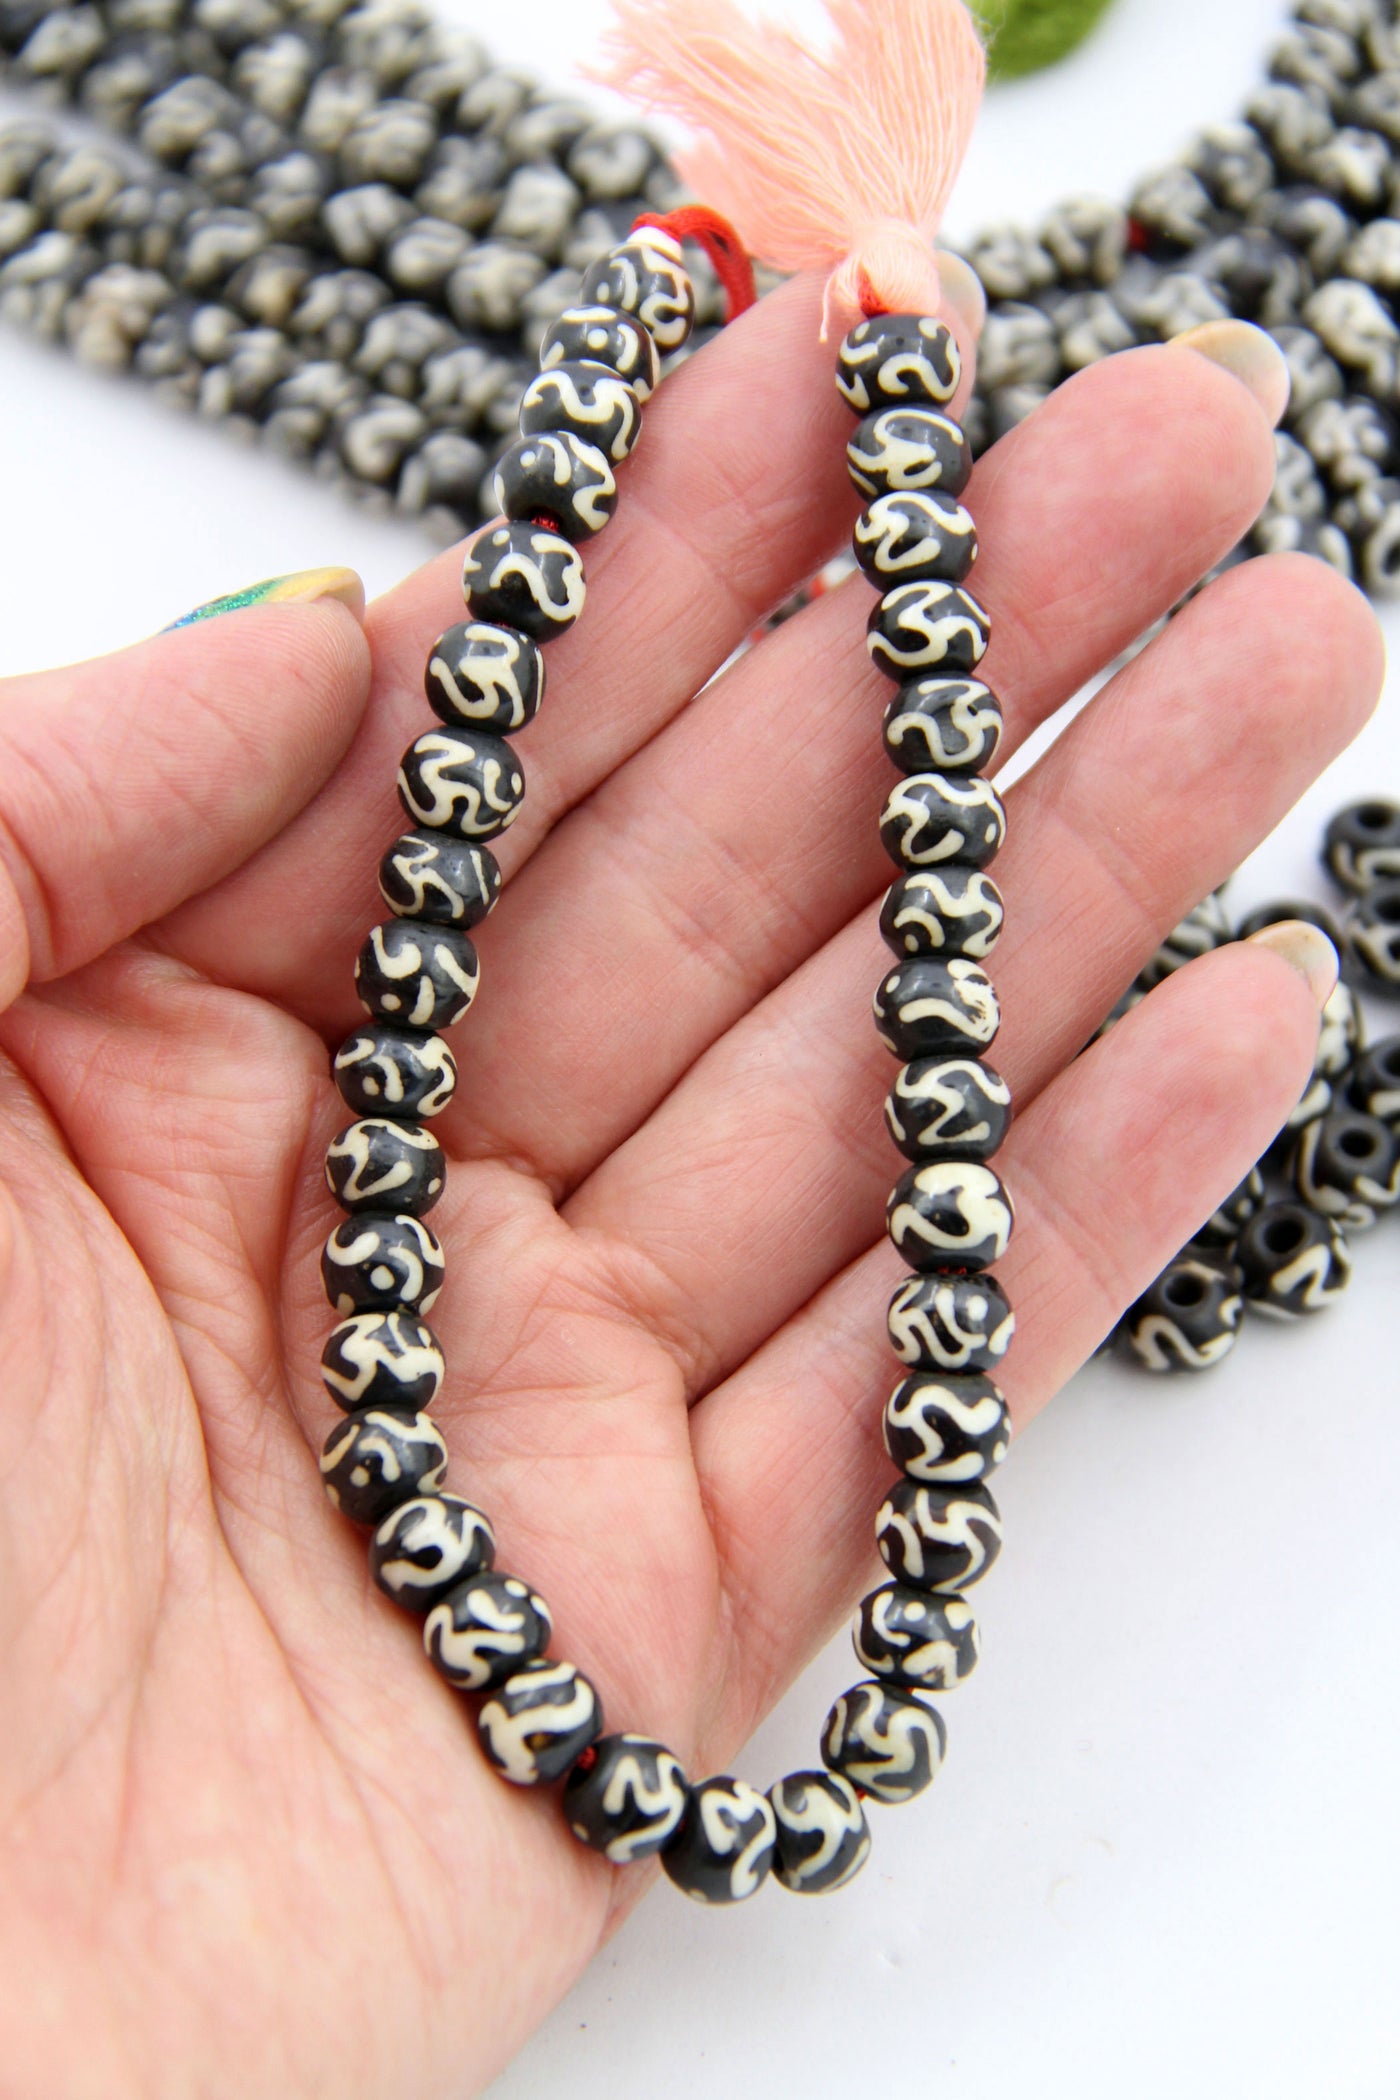 How to make Buddhist Prayer Beads